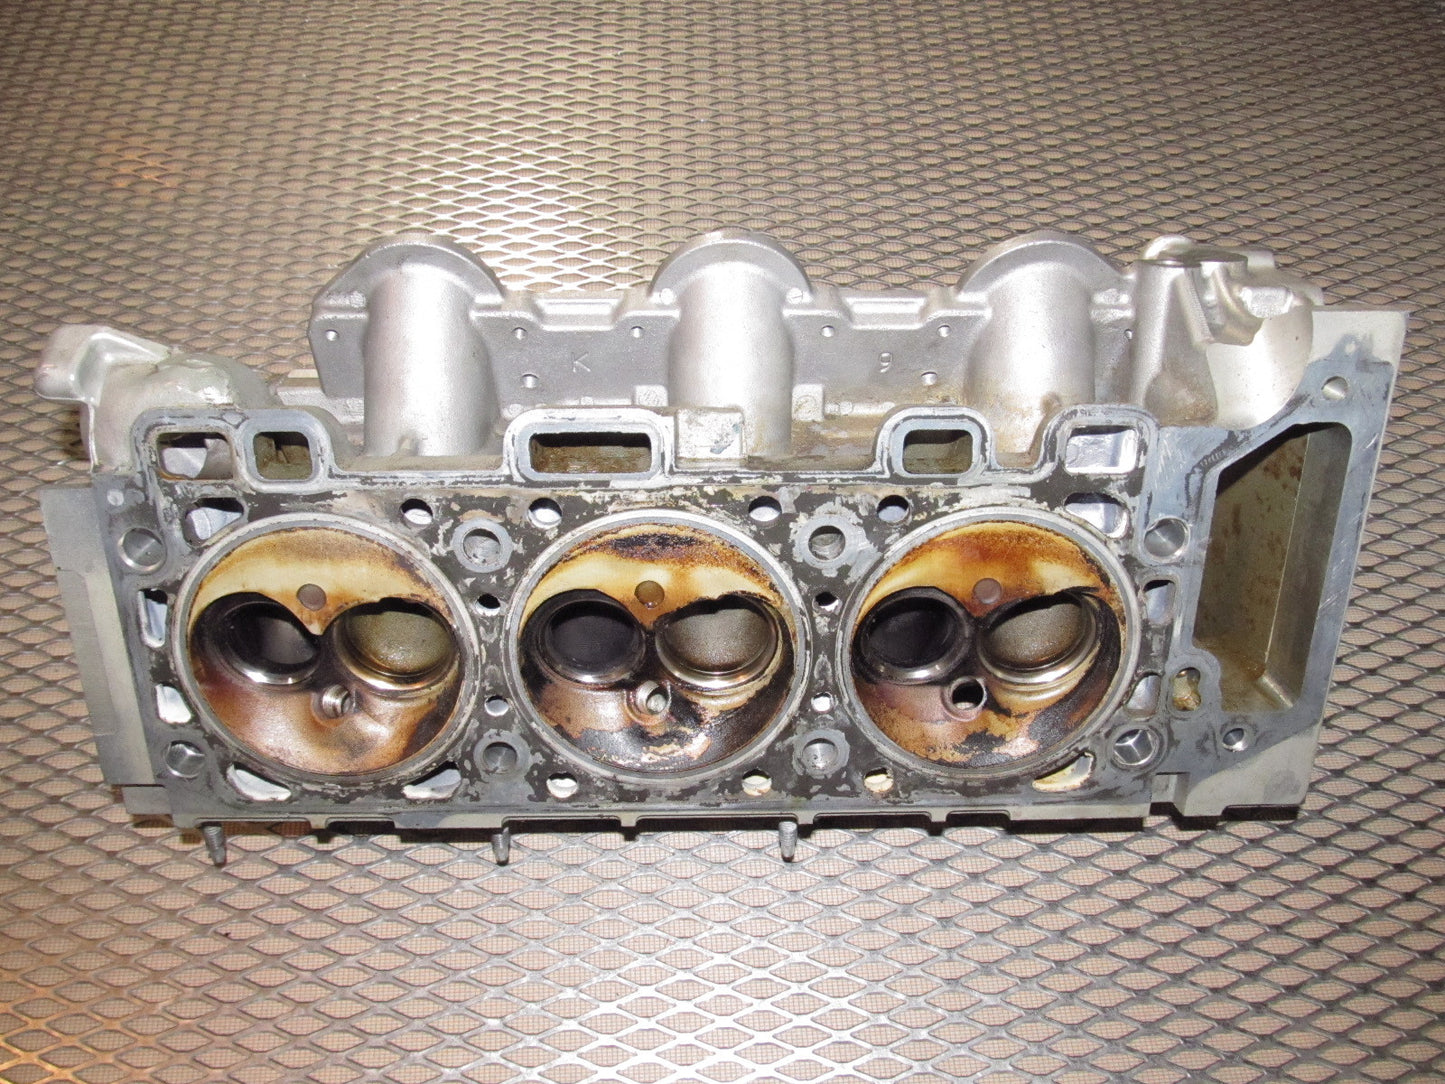 05 06 07 08 09 Ford Mustang 4.0 V6 OEM Engine Cylinder Head - Left